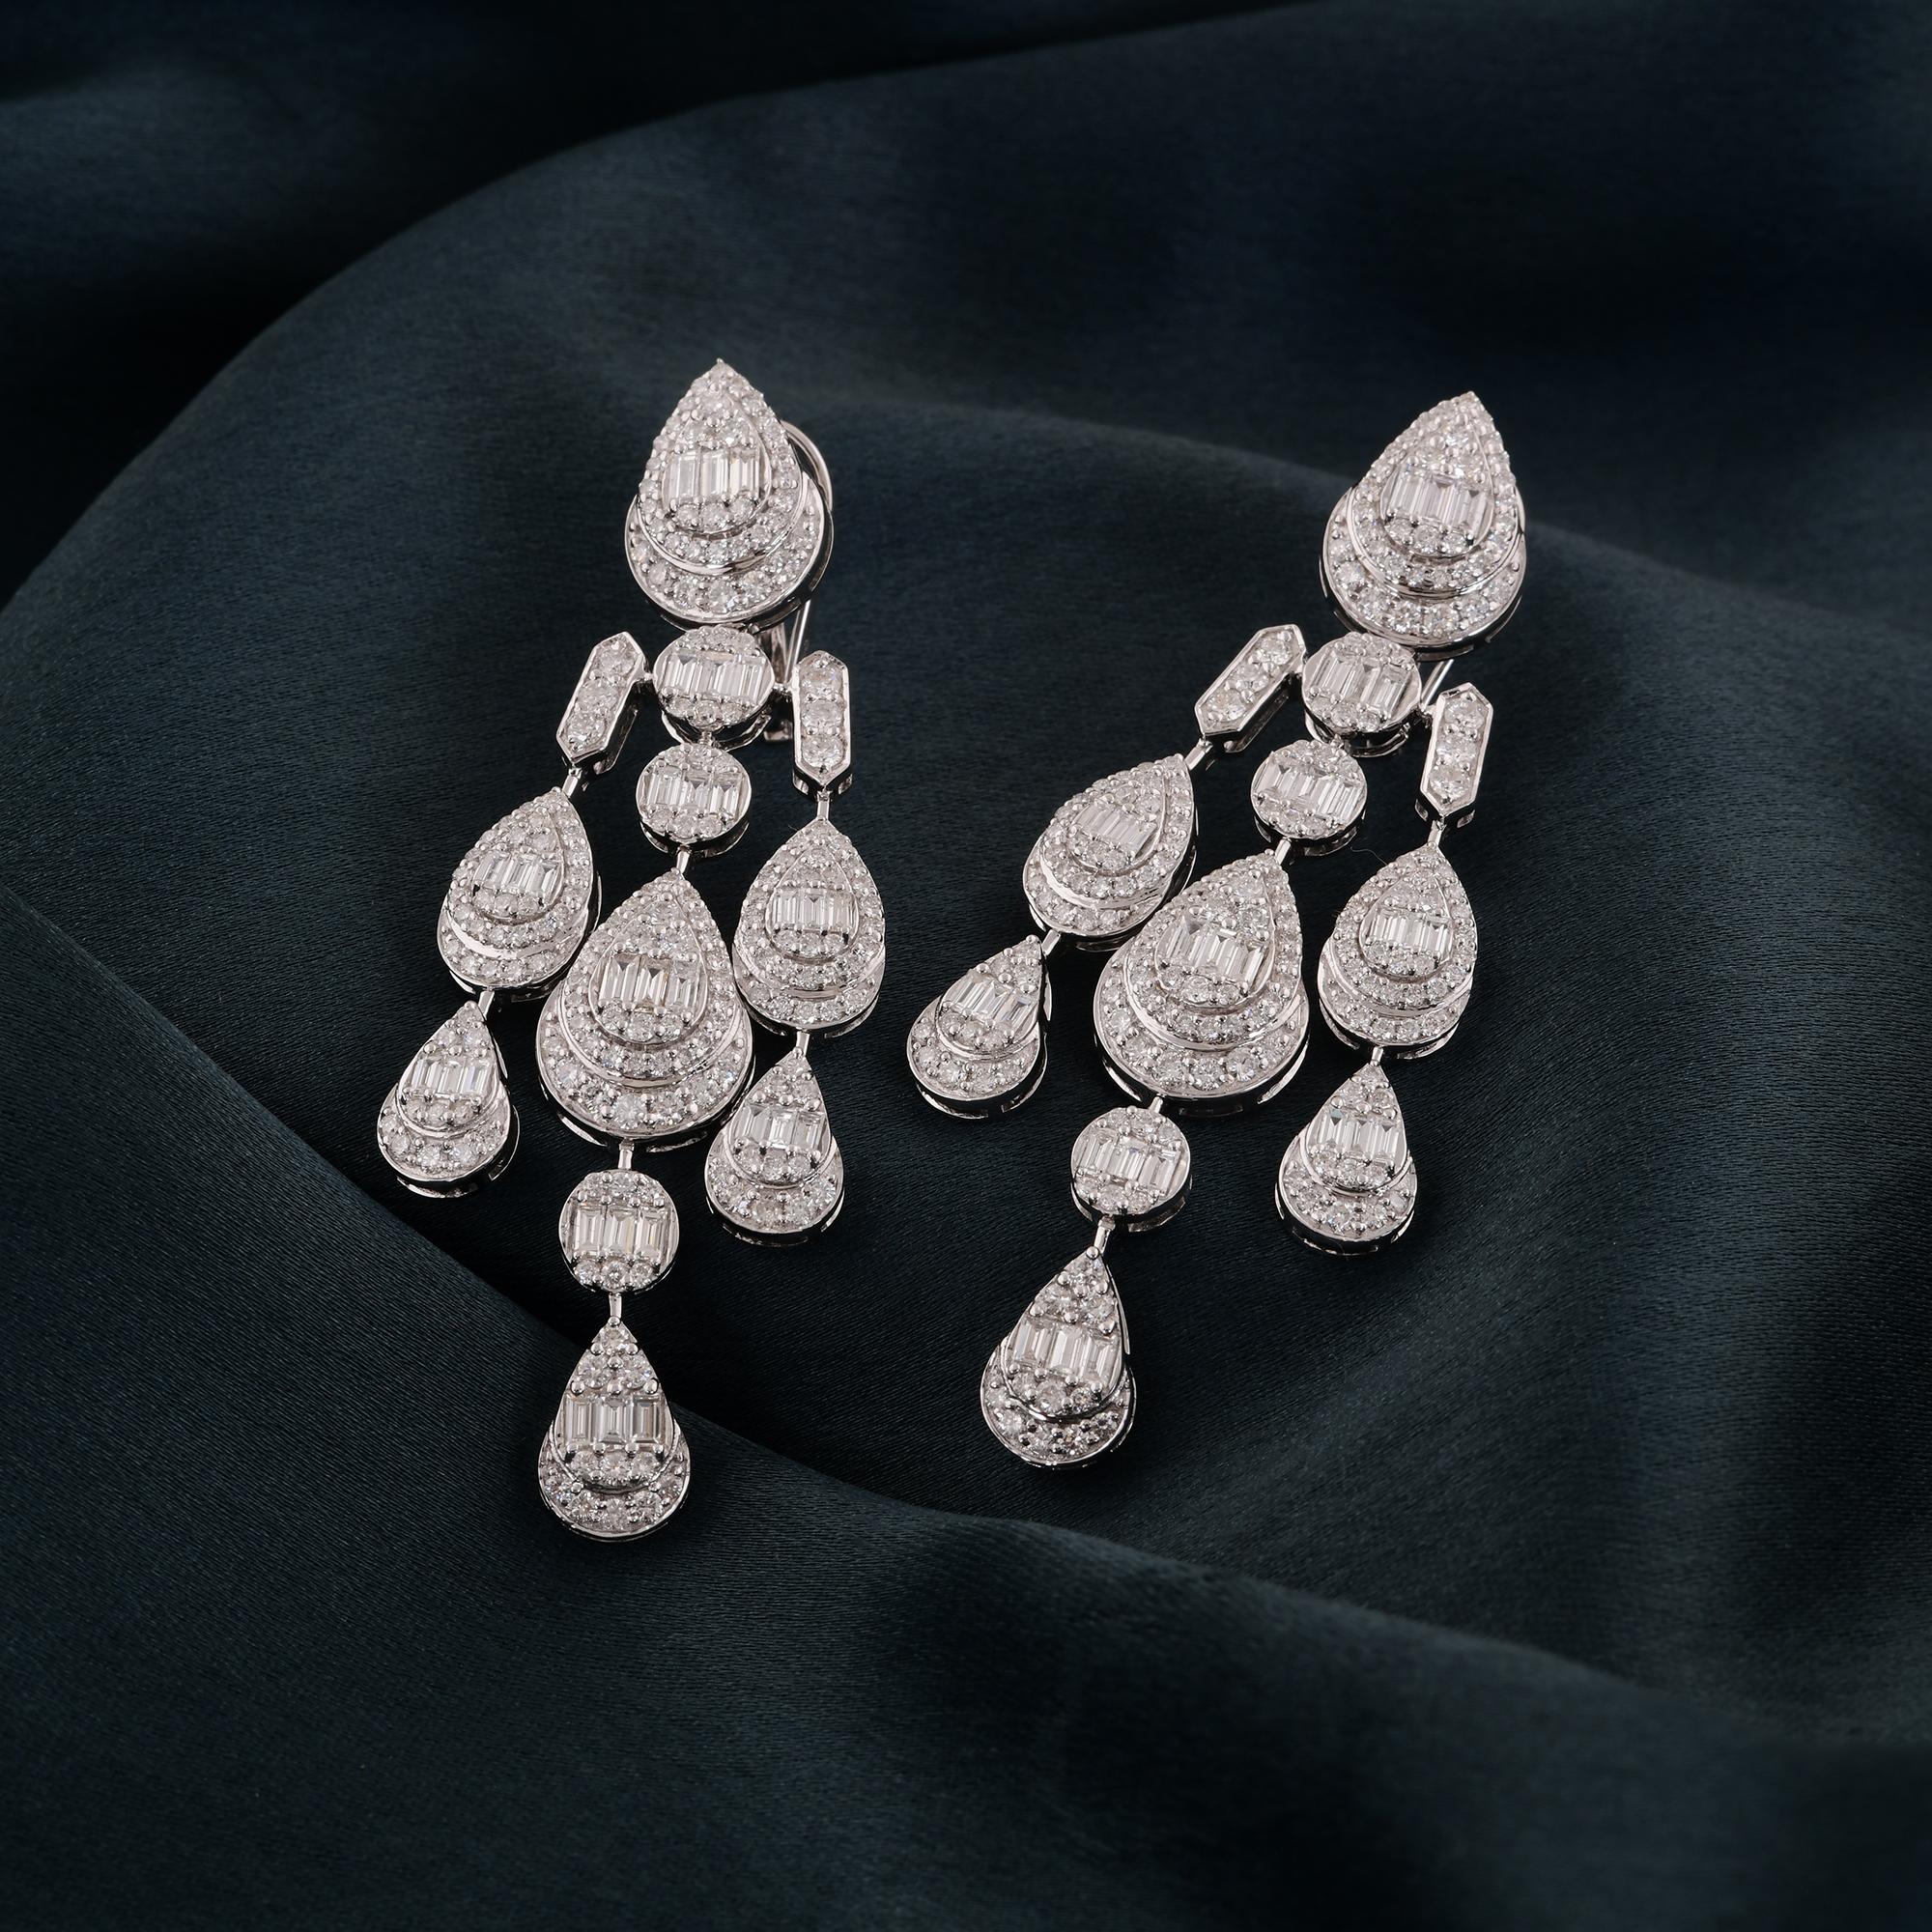 Modern Baguette Diamond Chandelier Earrings Solid 18 Karat White Gold Handmade Jewelry For Sale